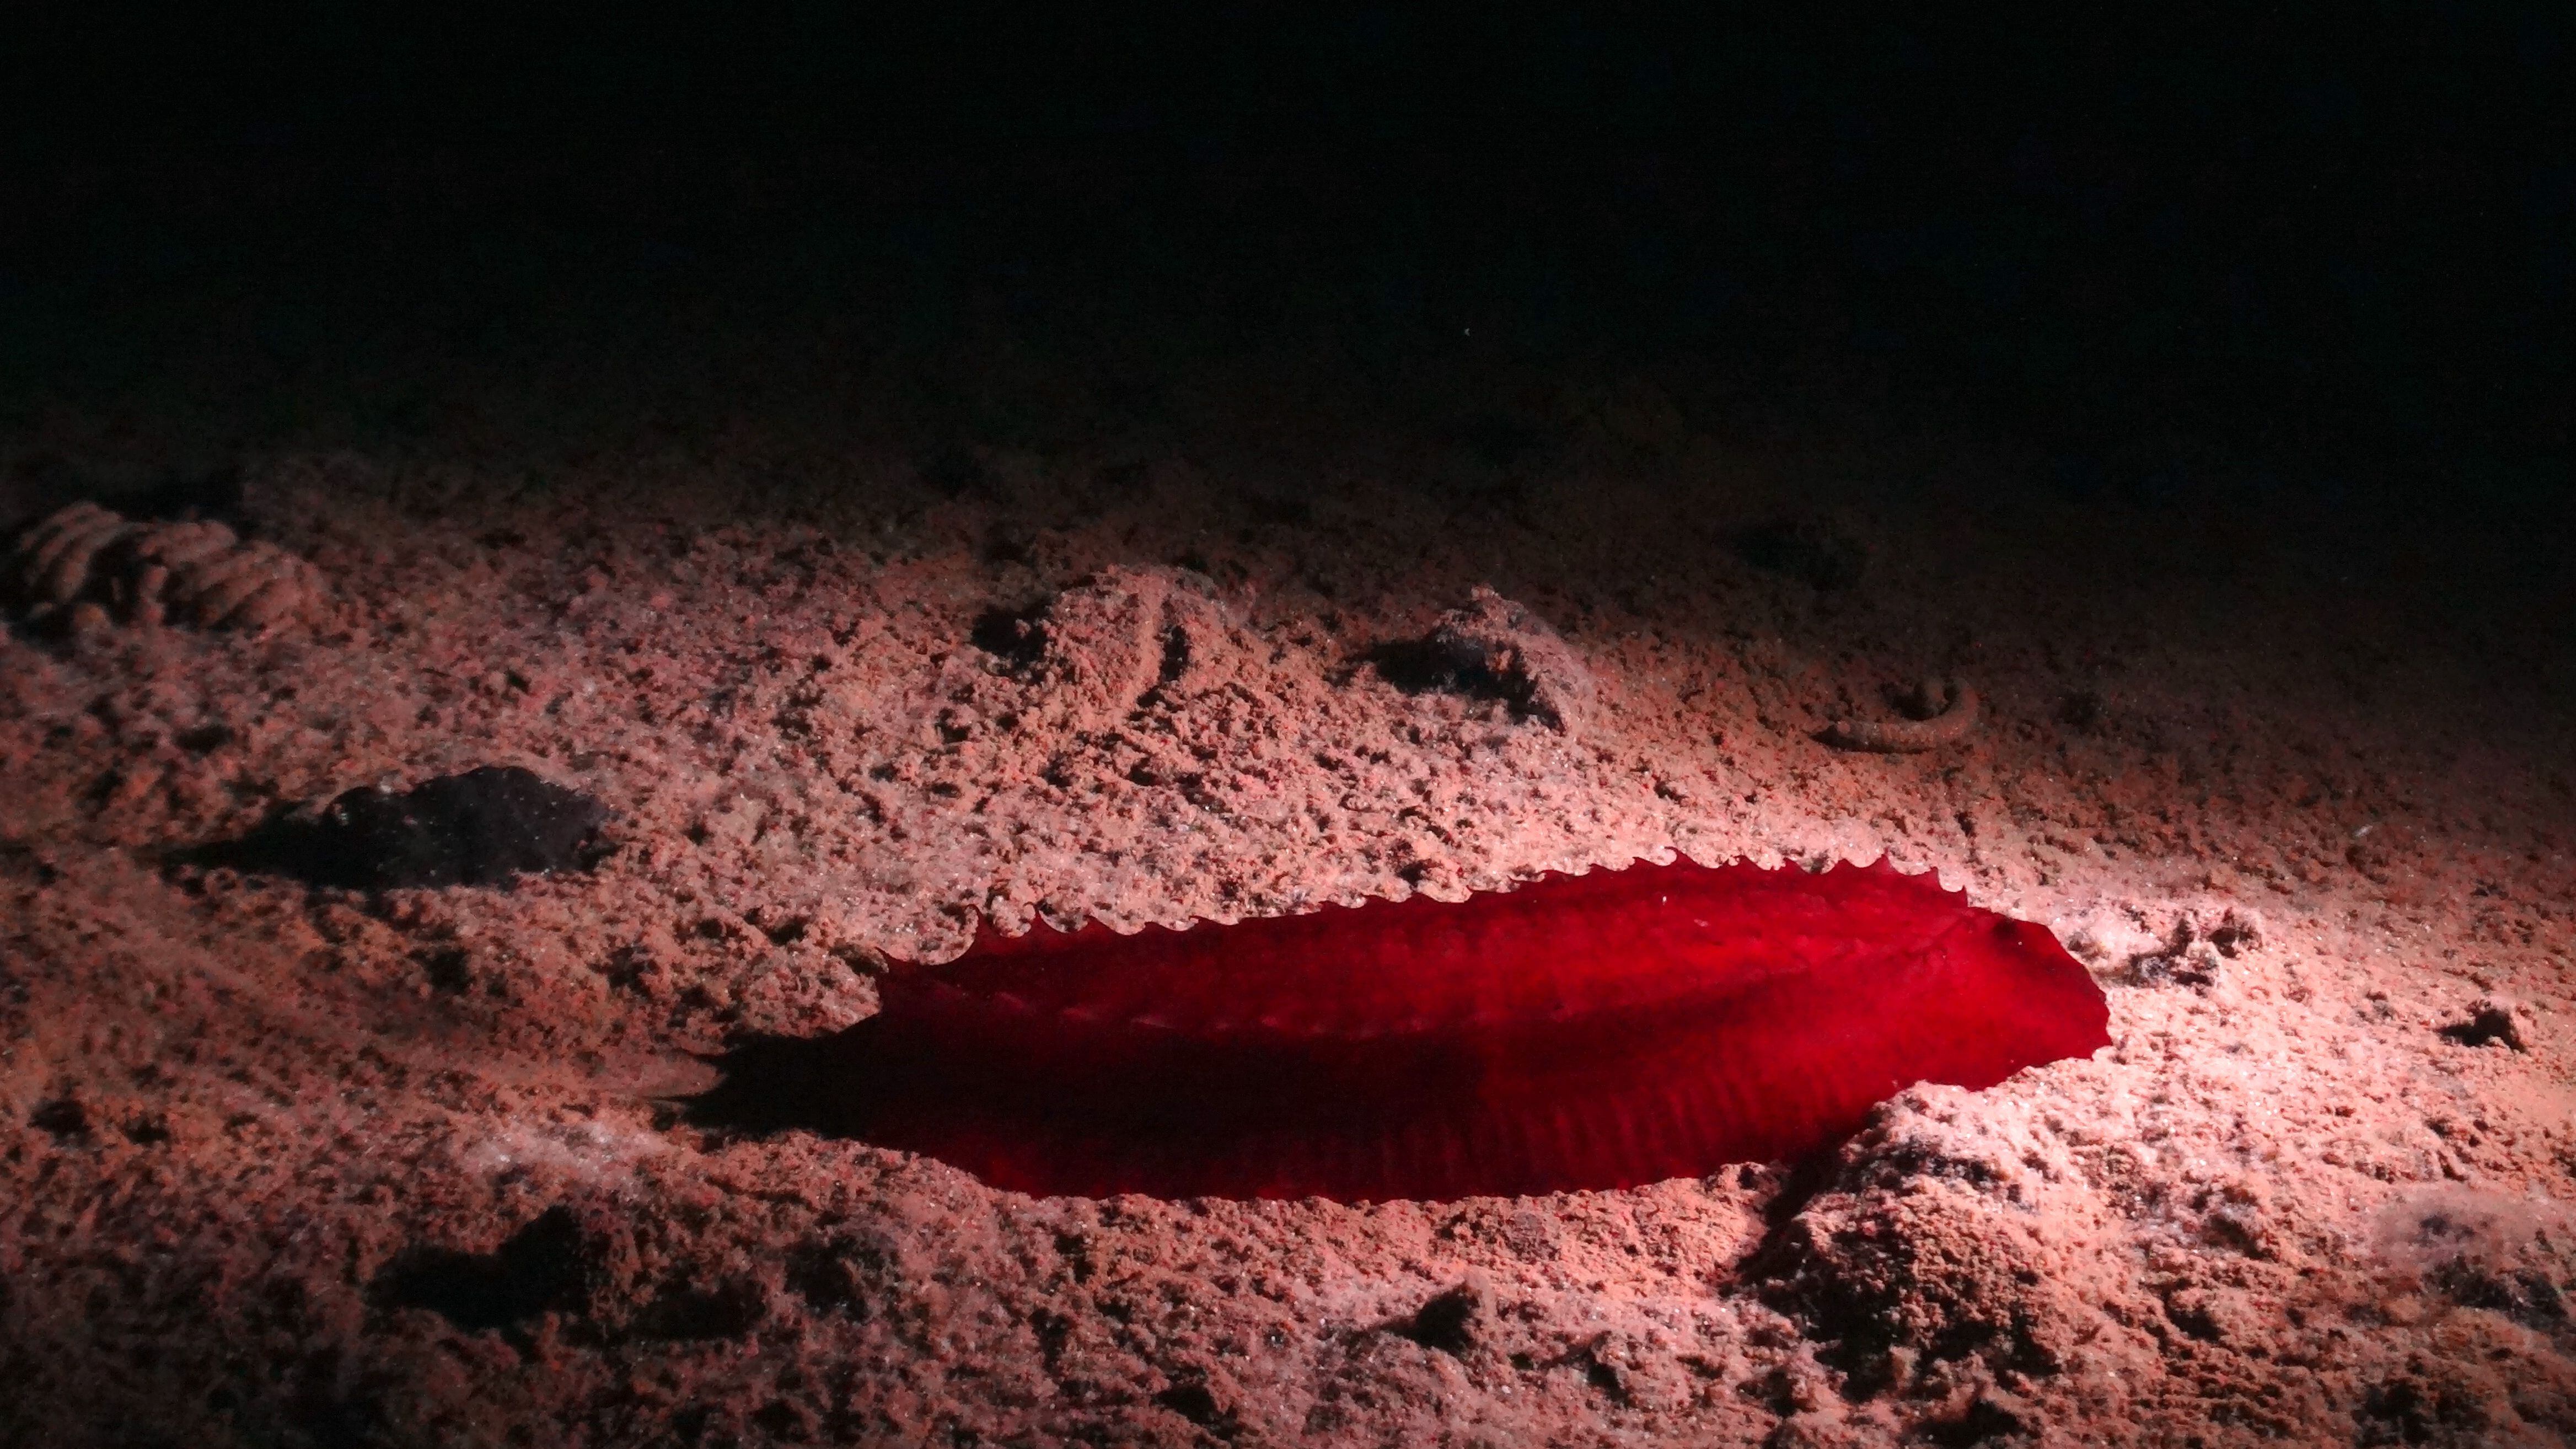 Un pepino de mar rojo, uno de los animales descubiertos en los fondos del Pacífico, en la zona Clarion-Clipperton.